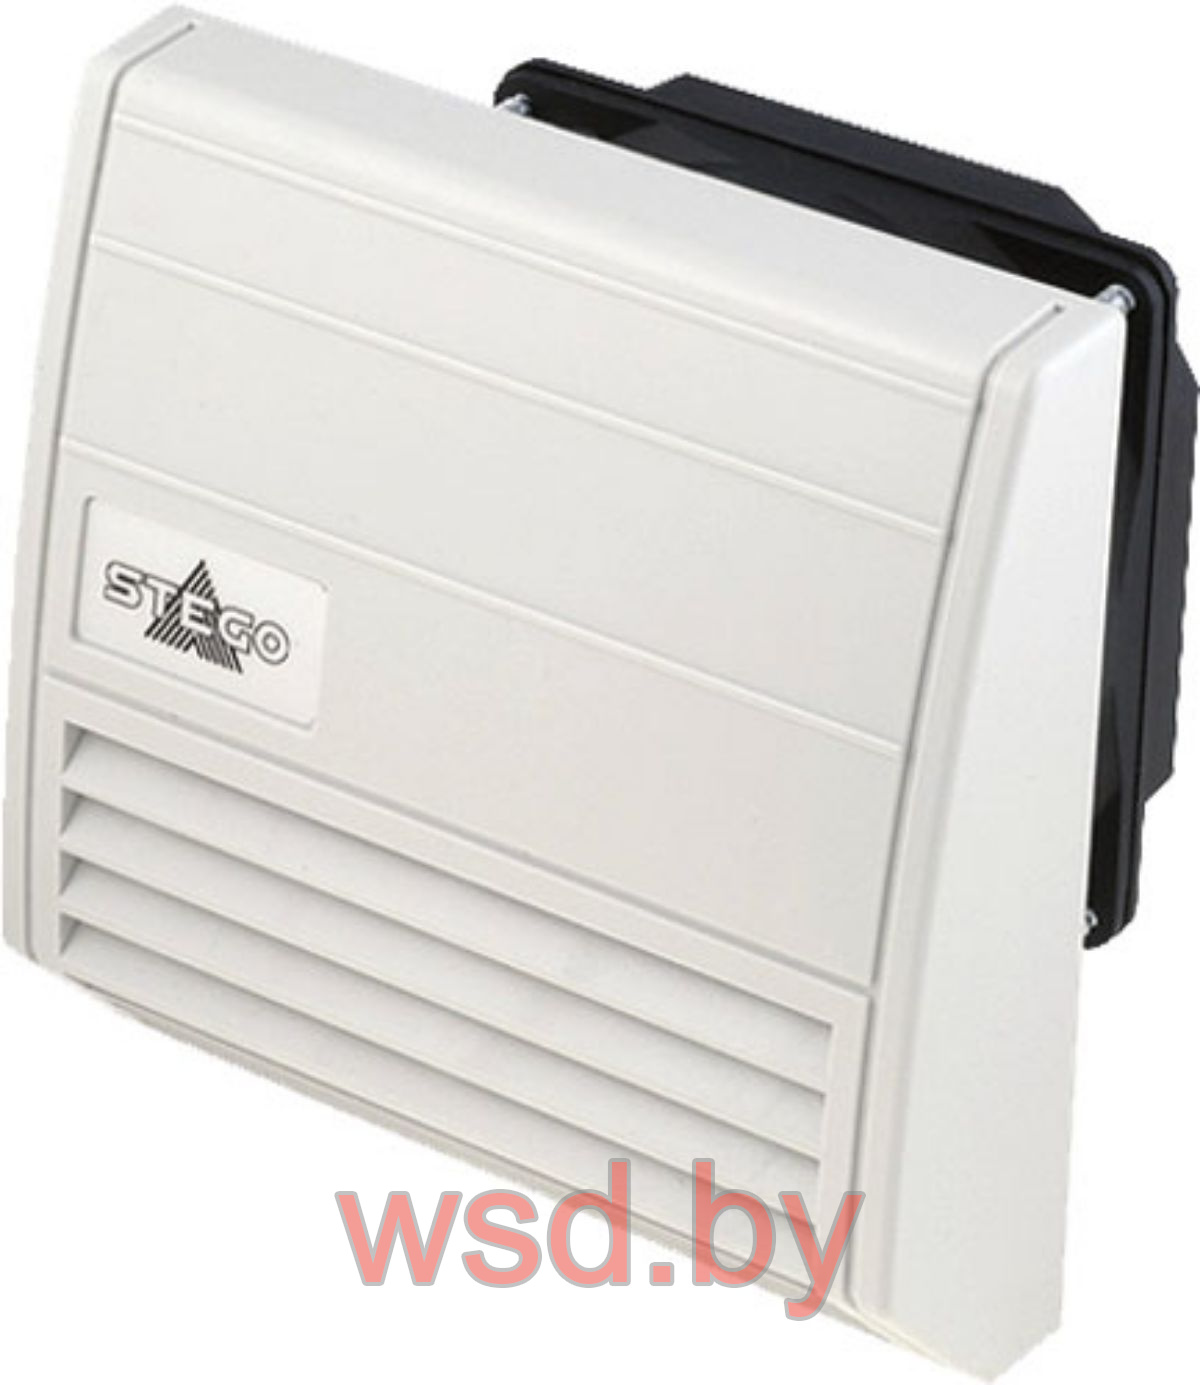 Вентилятор с фильтром FF 018, 15Вт, 230VAC, 55(42м)3/ч, 170x157мм, IP55